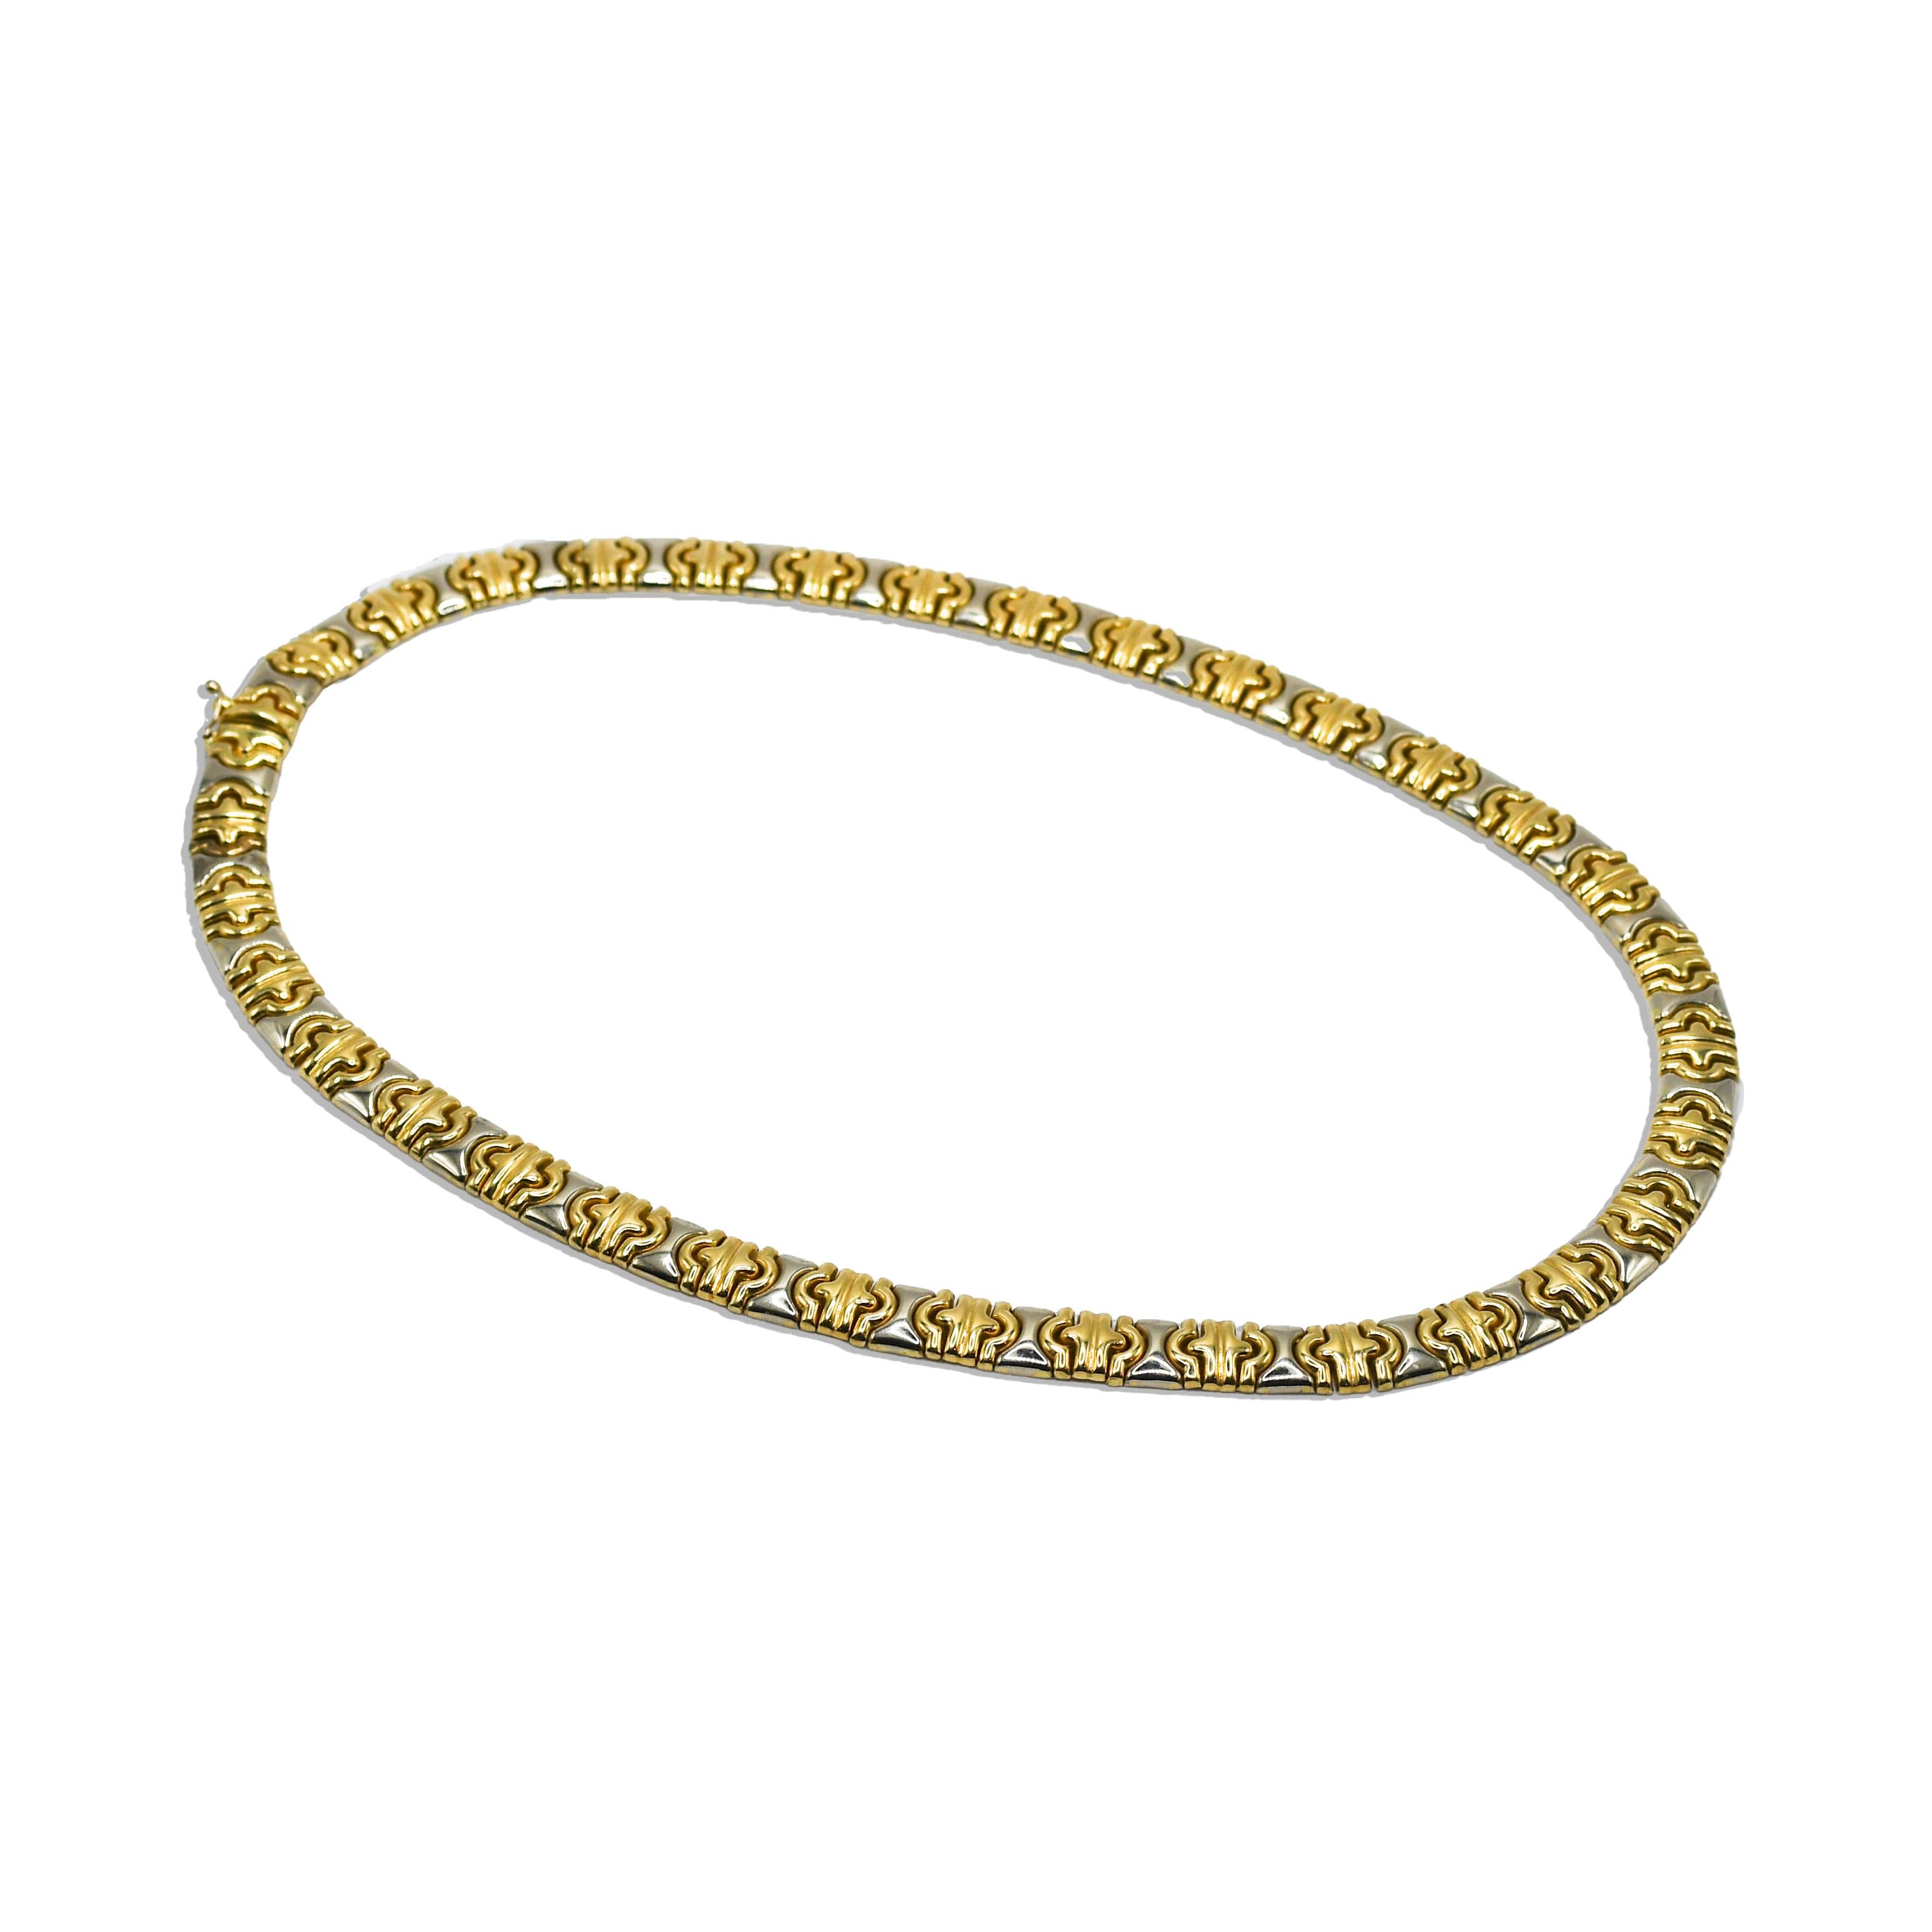 14k Gelbgold fancy Link Halskette.
Gestempelt 585, 14k Italien auf Schliessen und wiegt 44,3 Gramm.
Die Halskette ist 18 cm lang und 9 mm breit.
Ausgezeichneter Zustand.